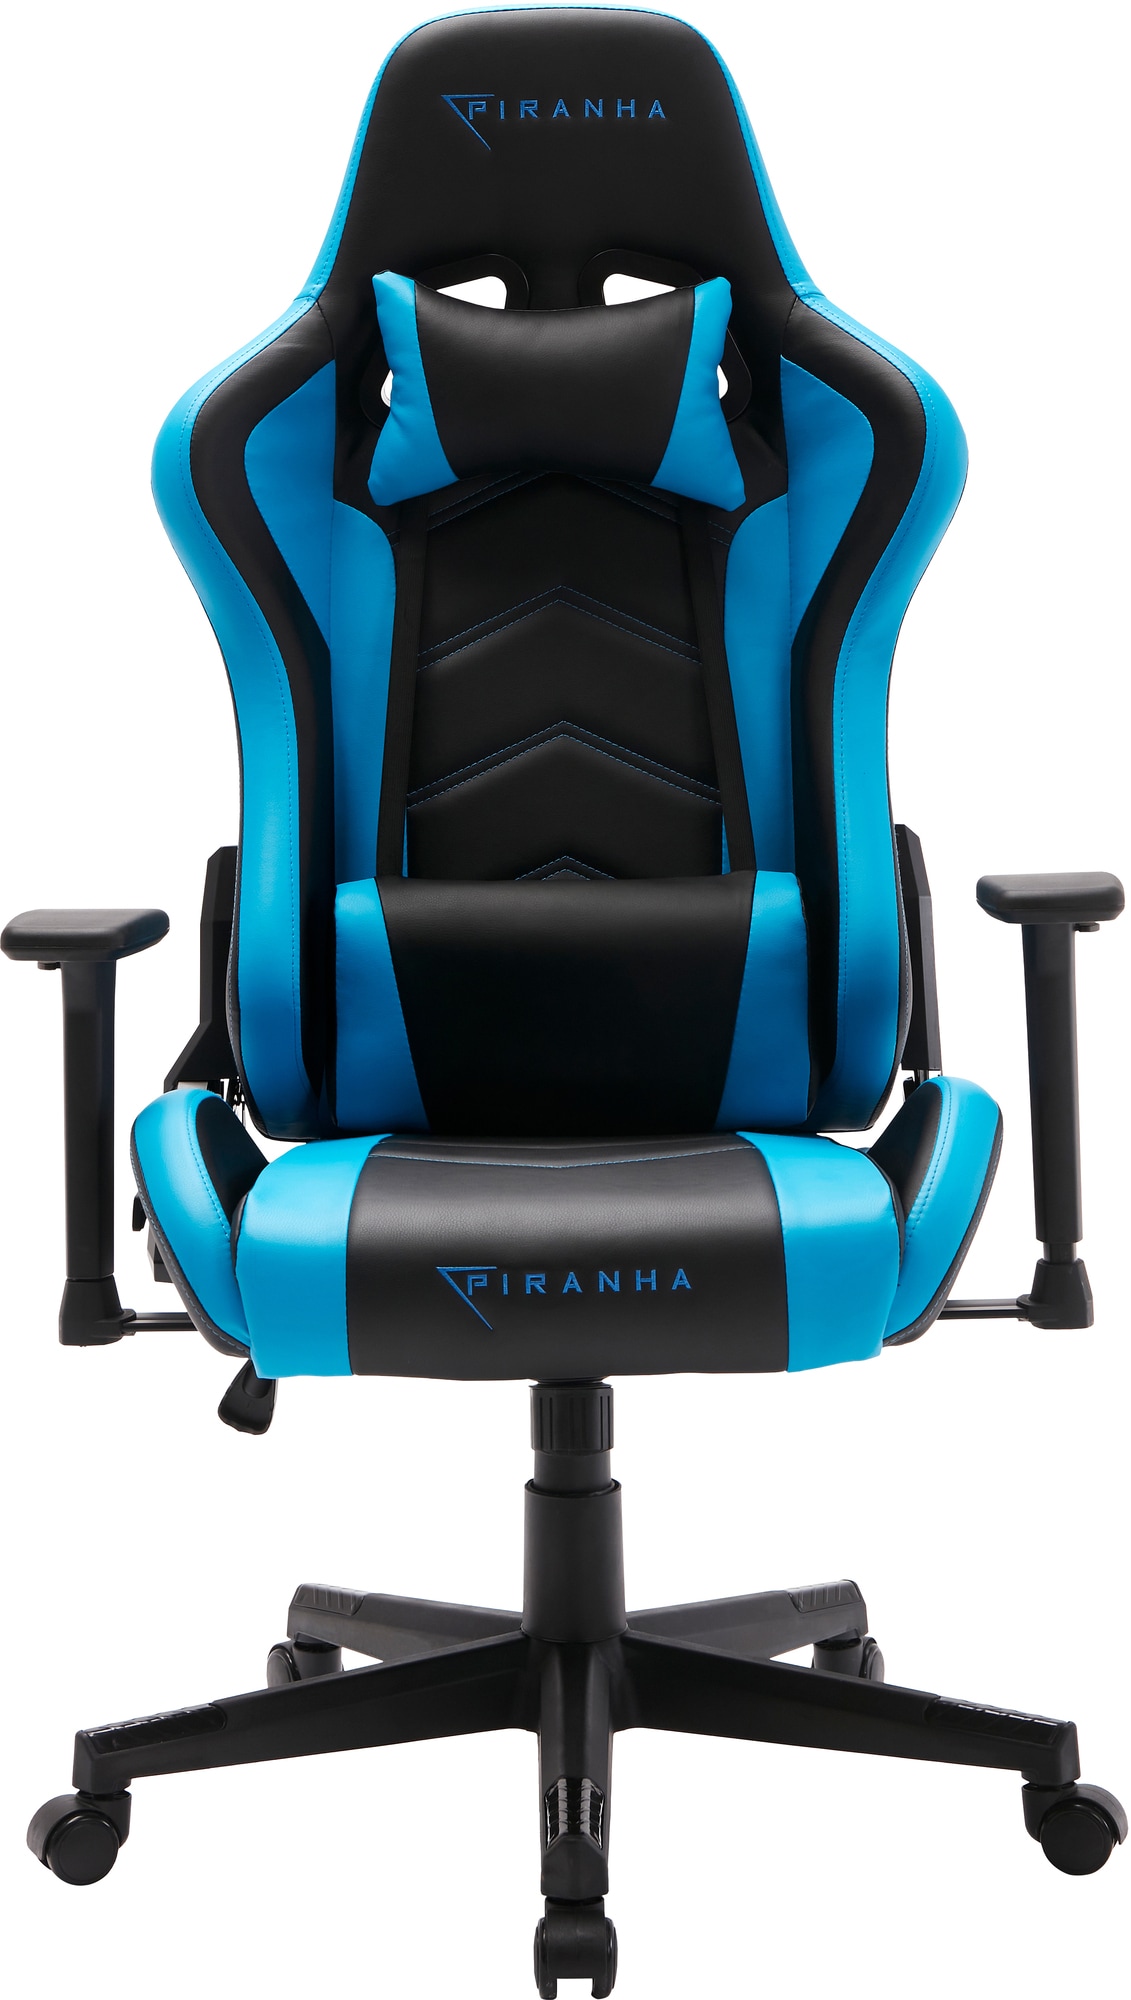 Piranha Attack V2 gaming stol (blå) | Elgiganten